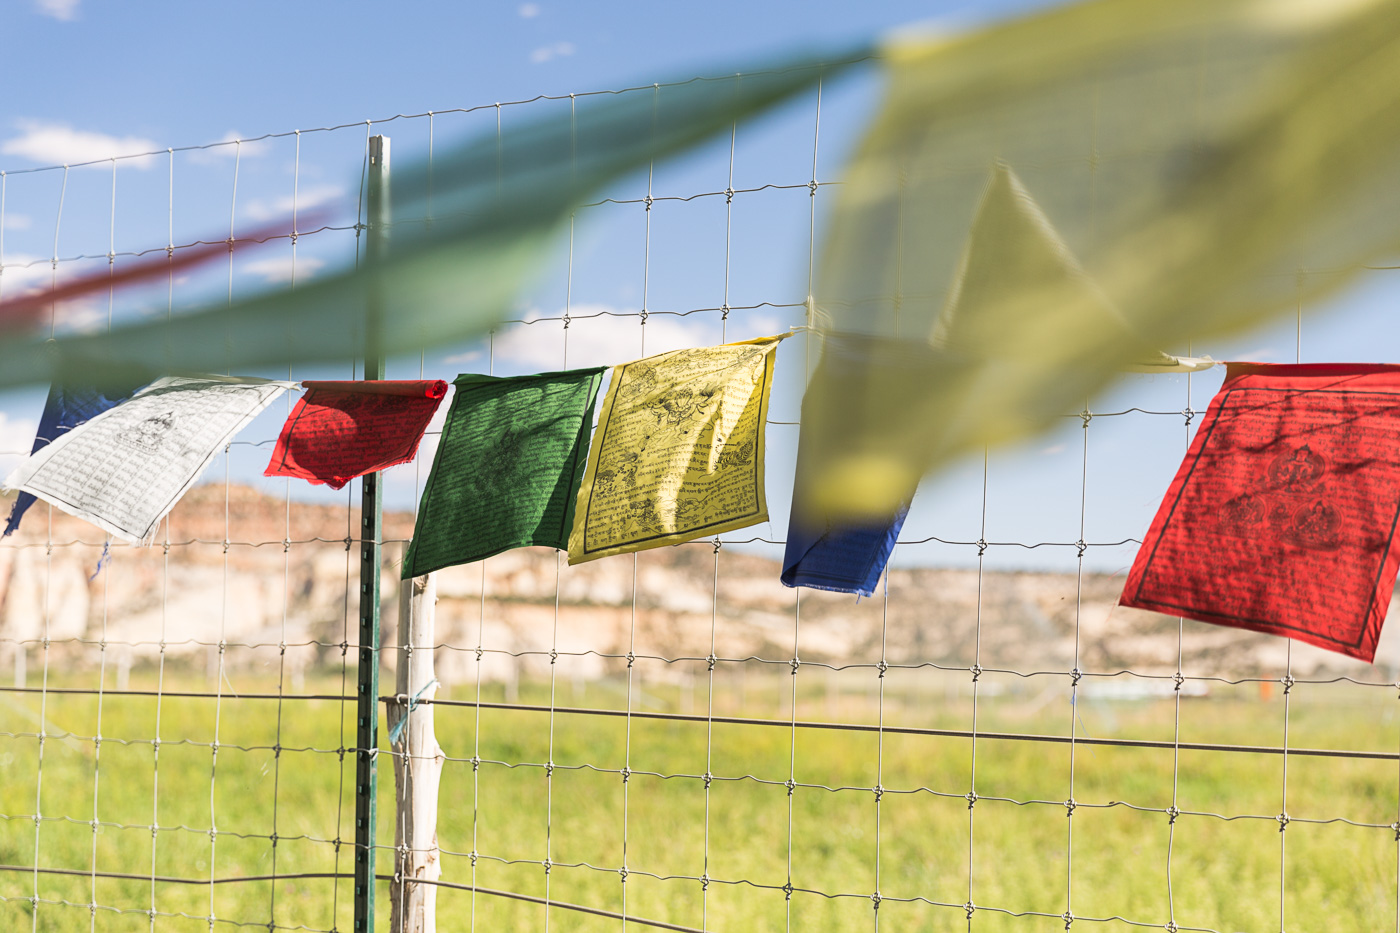 agriculture photographer - Tibetan prayer flags strung over a farm field